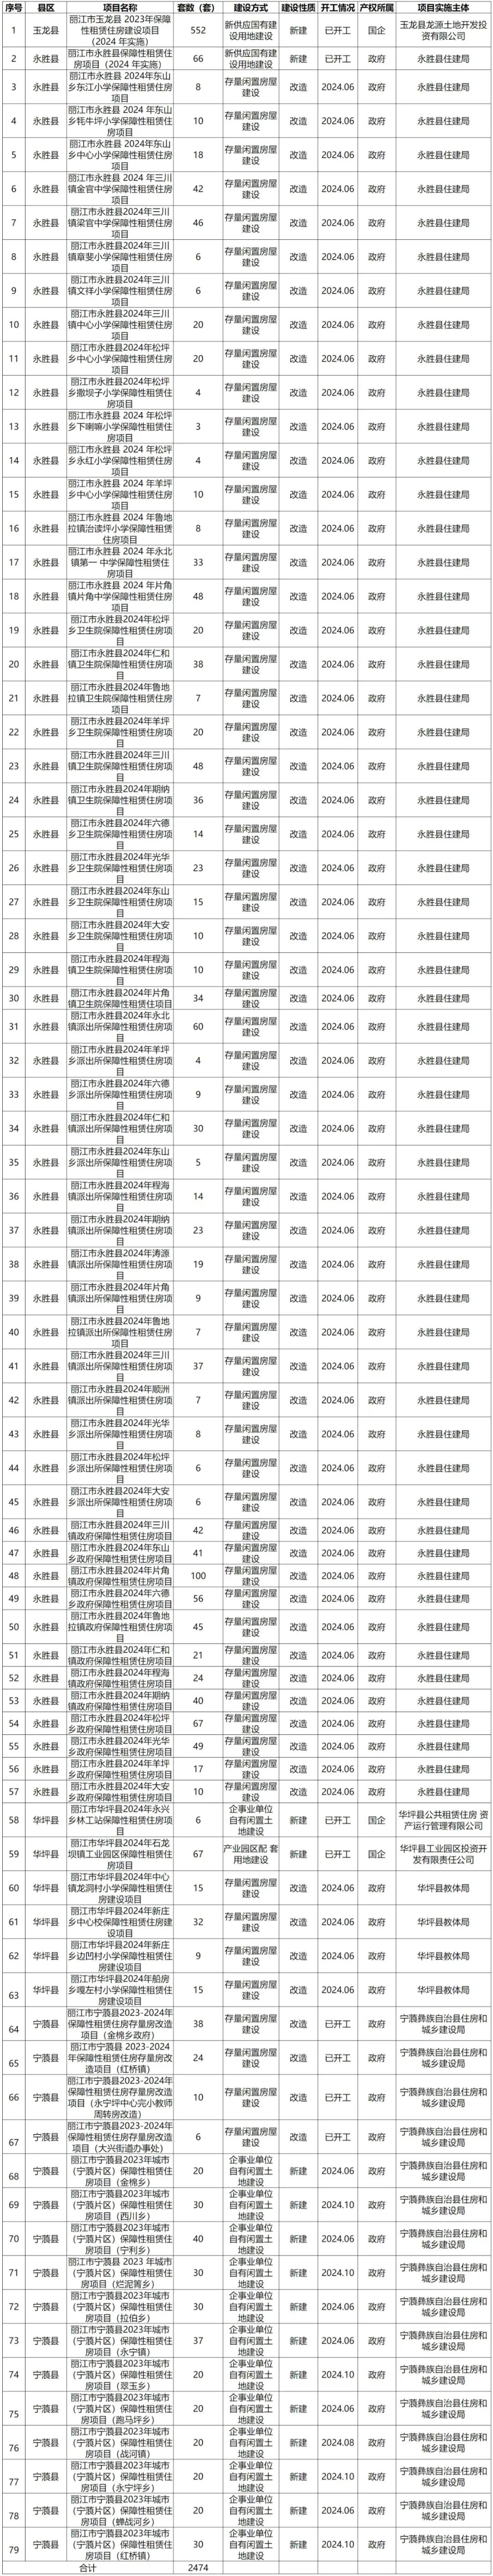 丽江今年计划建设、筹集保障性租赁住房2474套.jpg